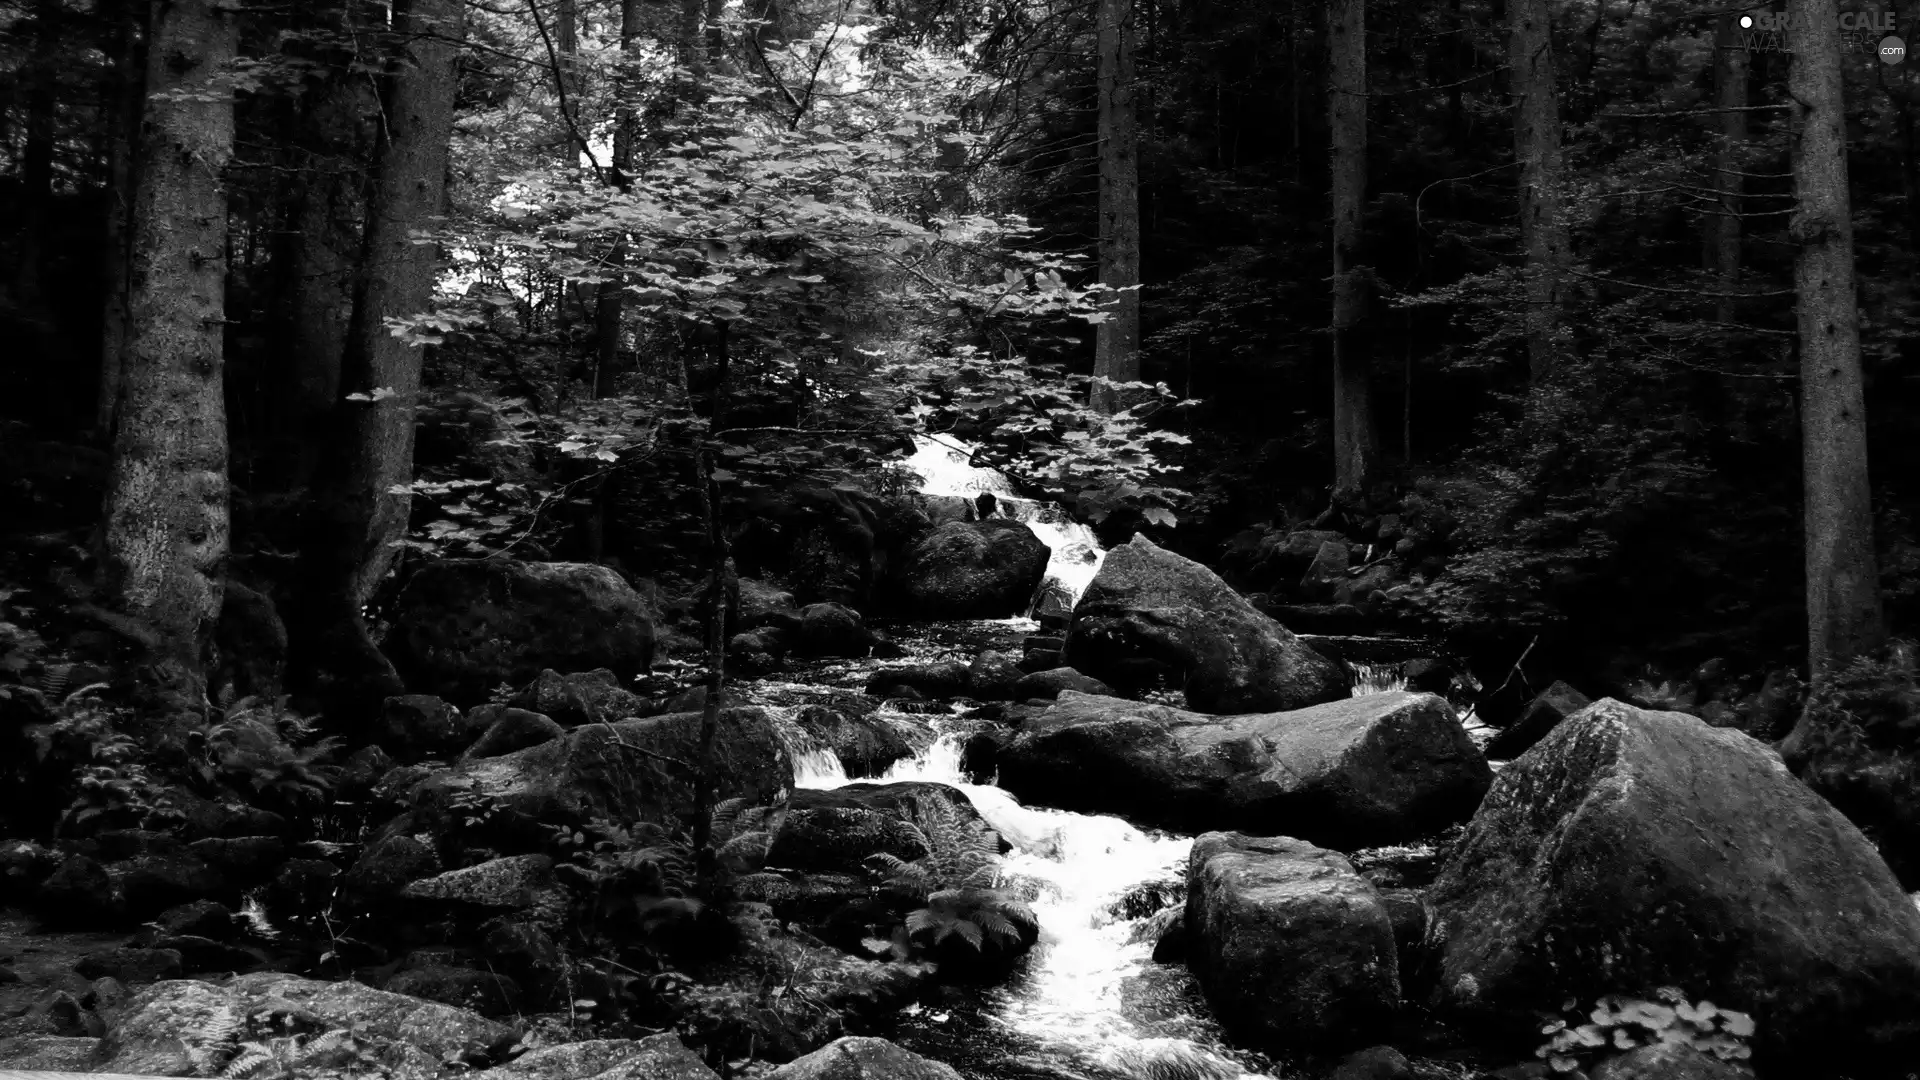 forest, VEGETATION, mountainous, rocks, stream